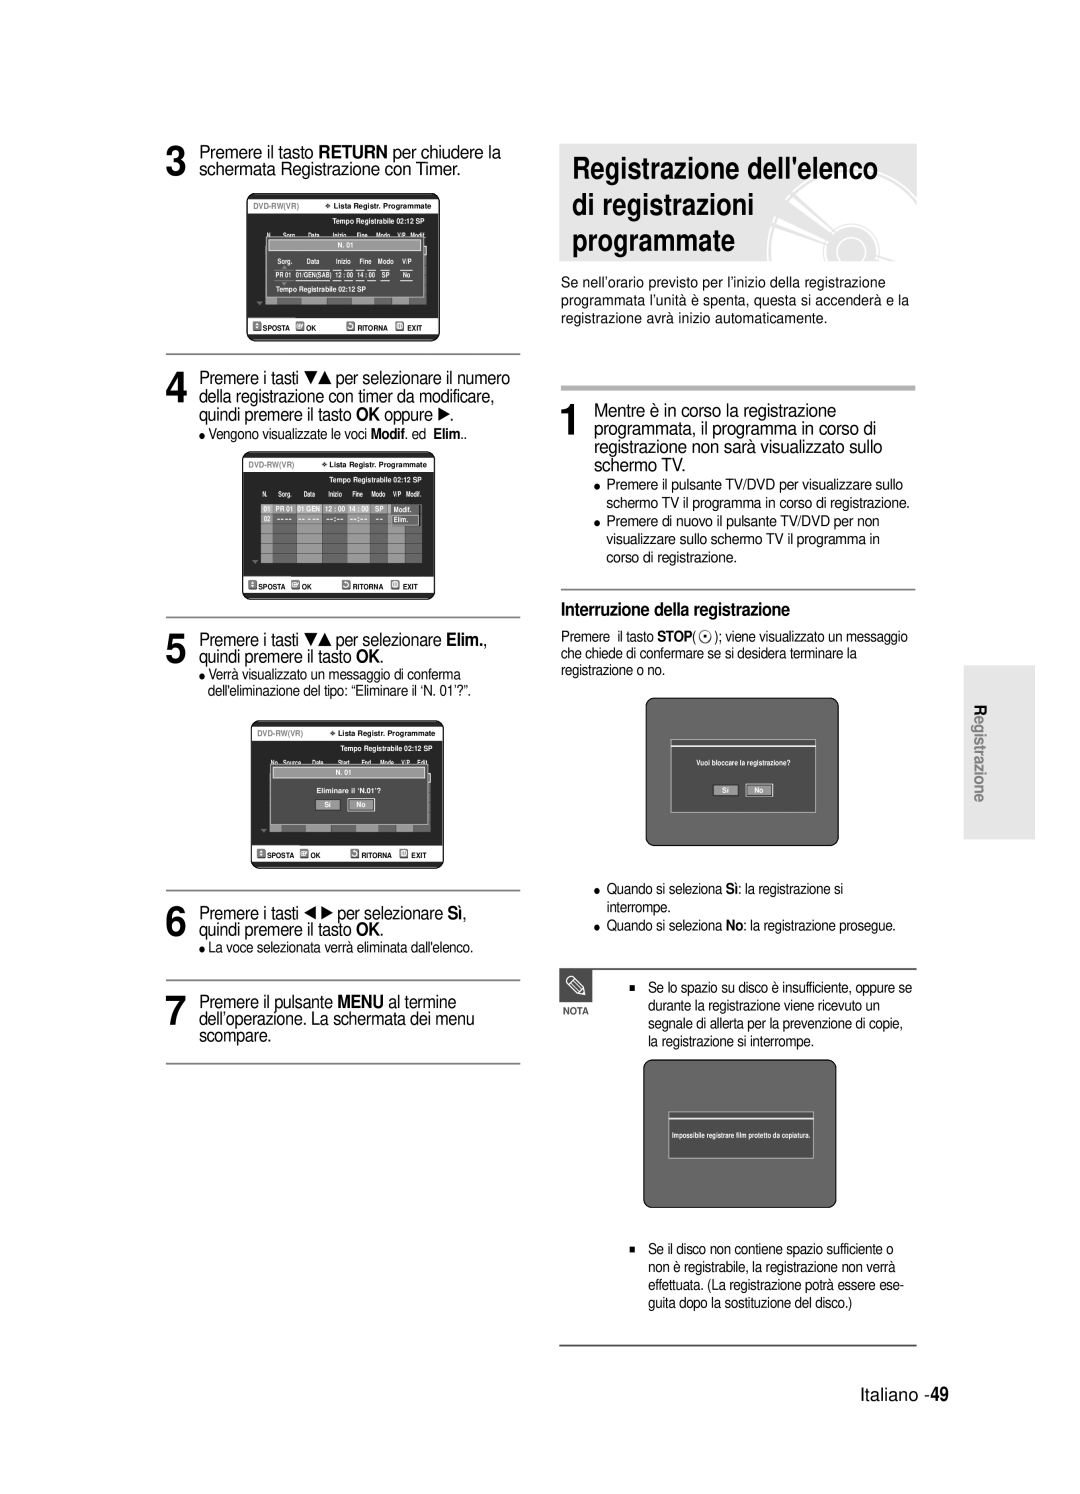 Samsung DVD-R120/AFS Registrazione dellelenco di registrazioni programmate, Interruzione della registrazione, Italiano 